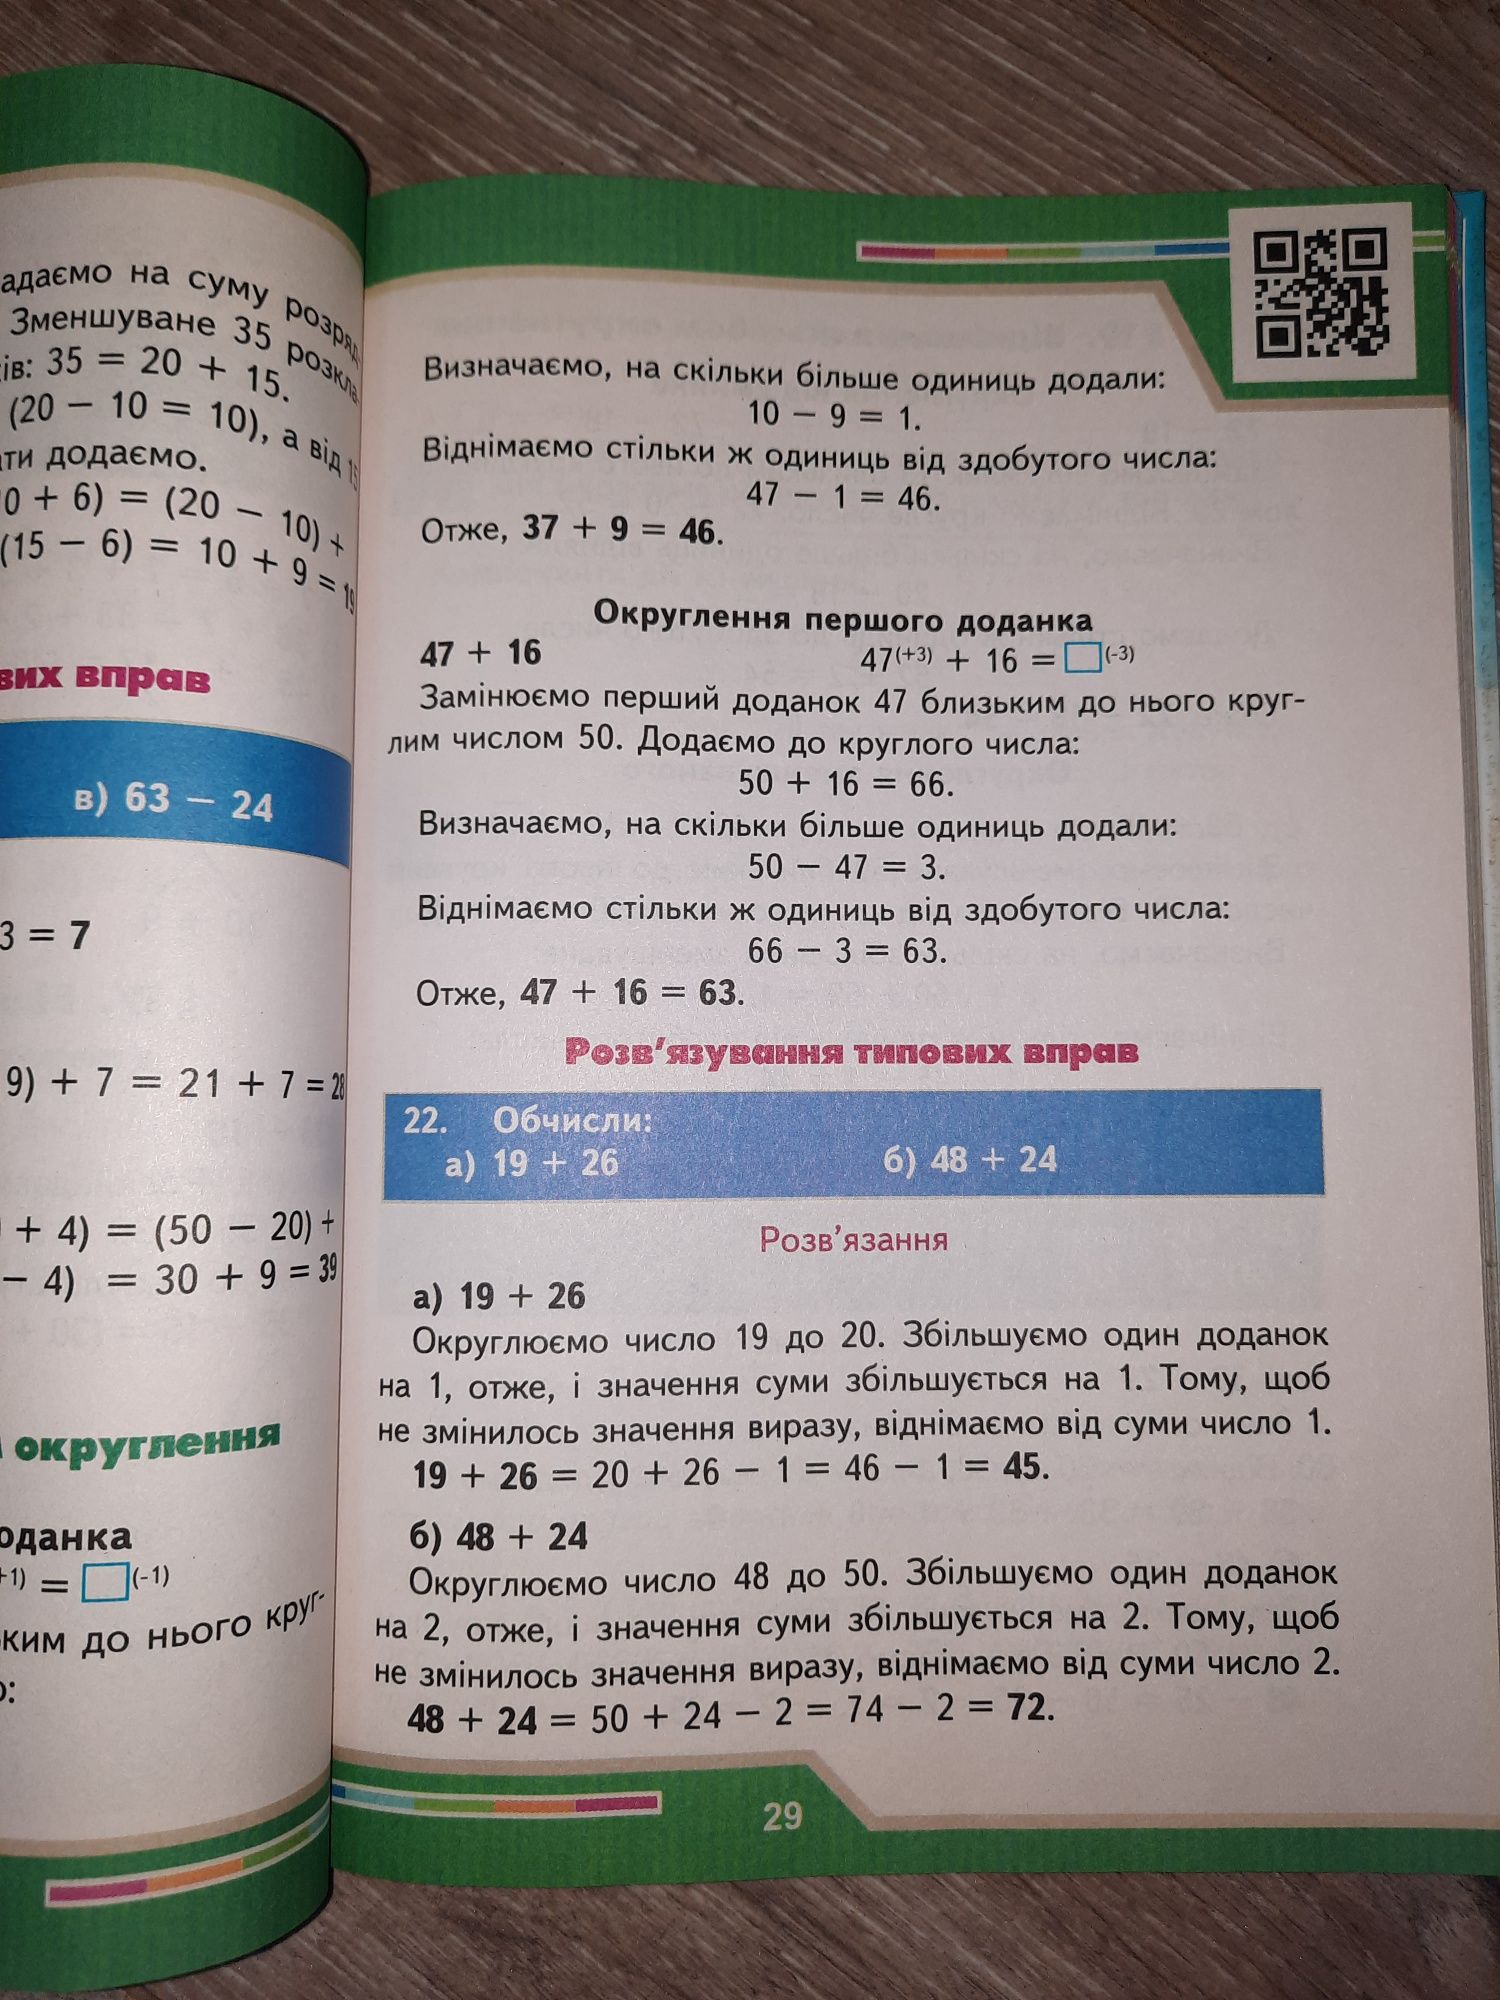 Жива книга "Математика" практичний довідник учня початкової школи